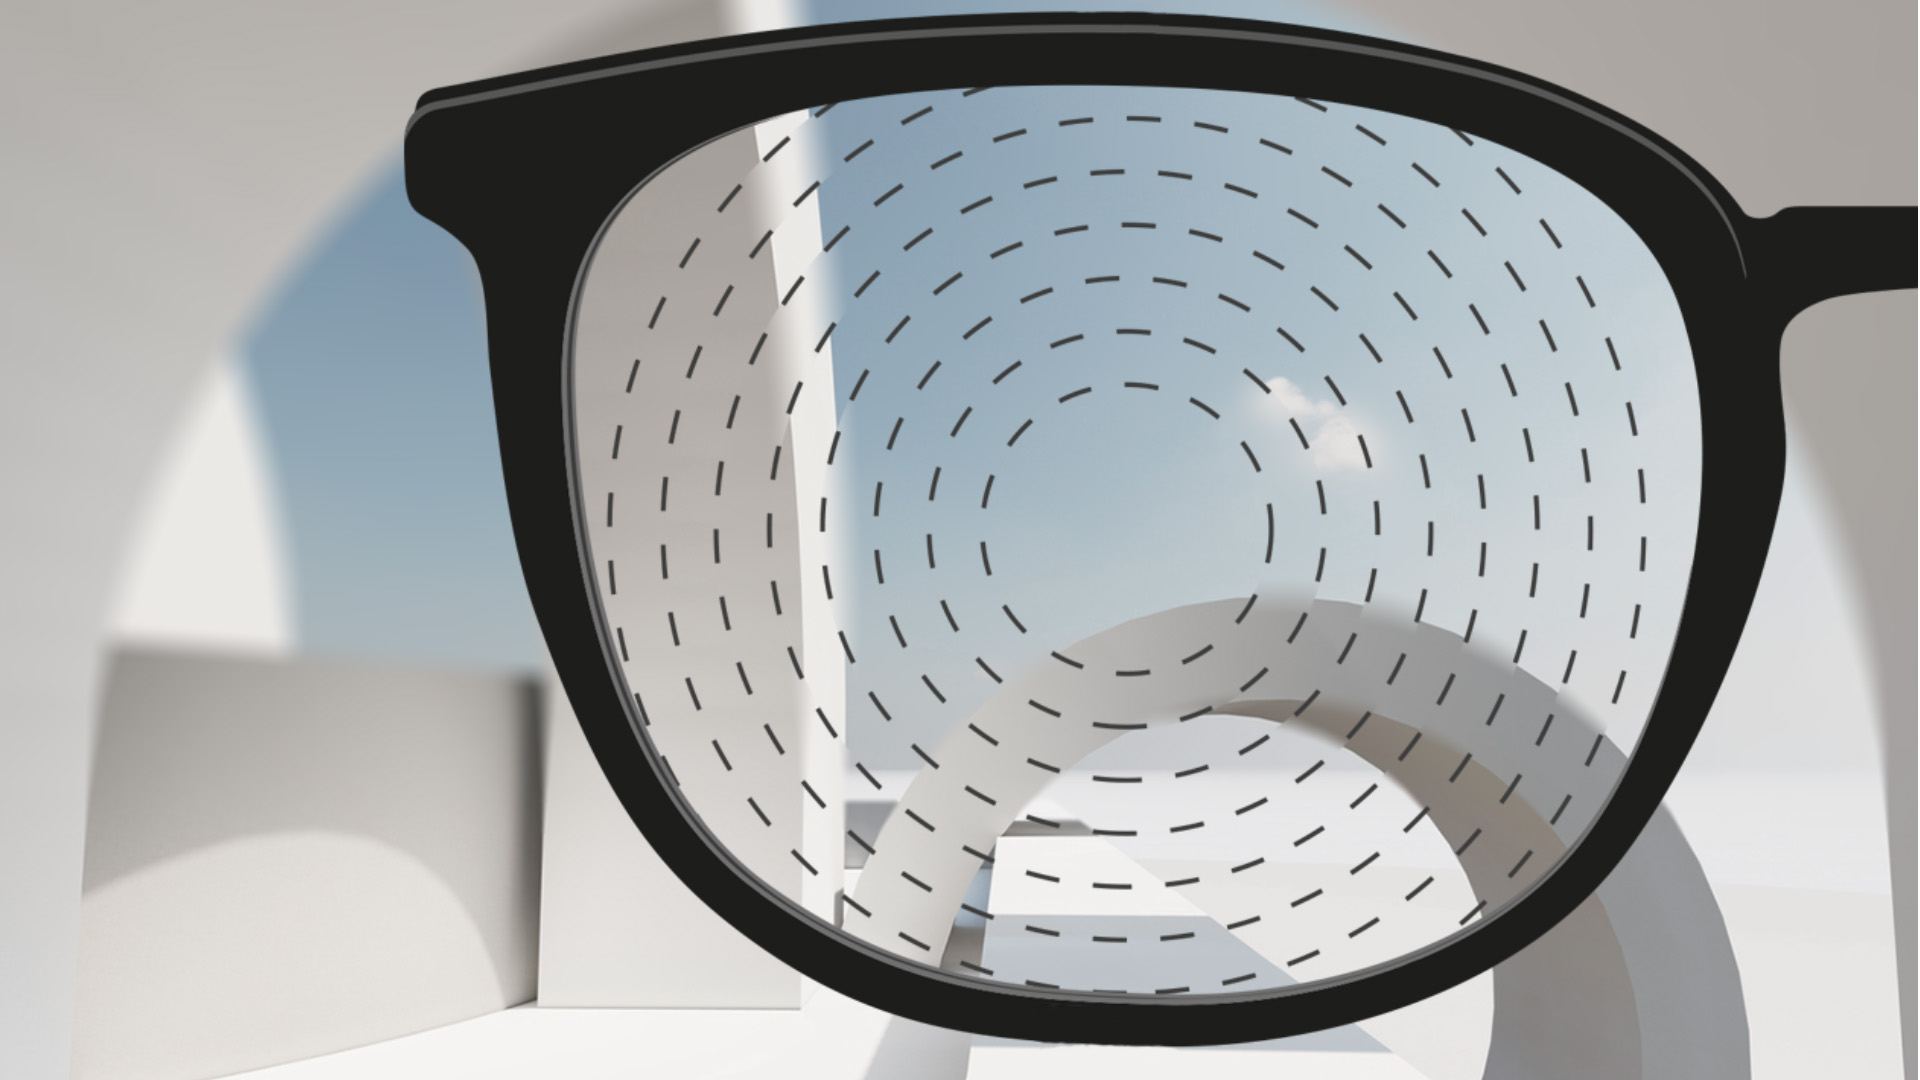 Abbildung mit Blick durch ZEISS Brillengläser für das Myopie-Management.